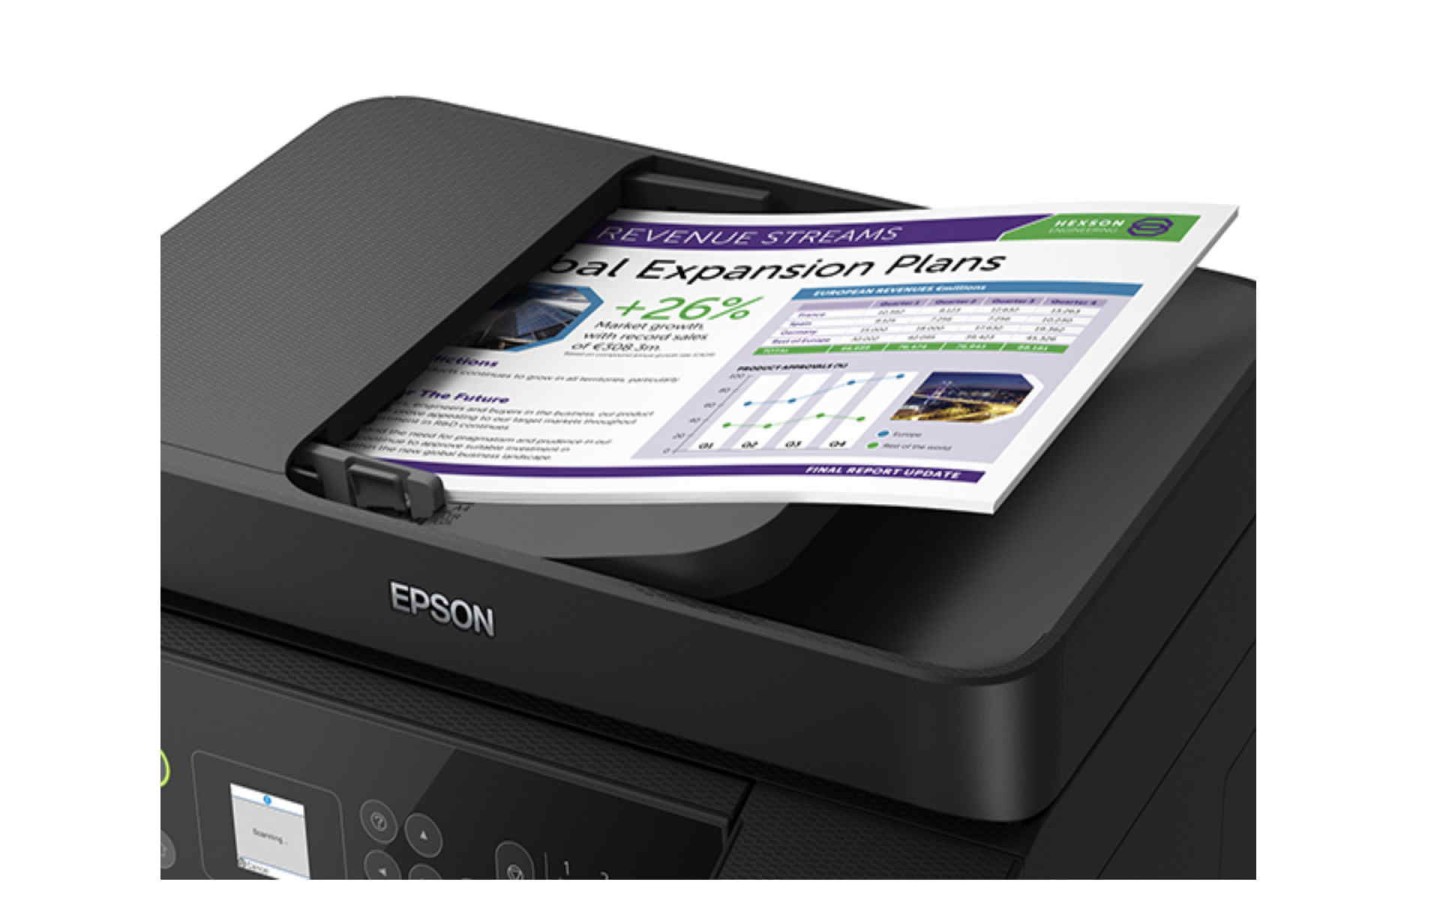 Gran Capacidad de Respuesta Epson EcoTank ET-L5190 Impresora multifunción 4 en 1 fotocopiadora, escáner, Impresora, fax, A4, ADF, Duplex, WiFi, Ethernet, Pantalla, USB 2.0 bajo Coste por página 